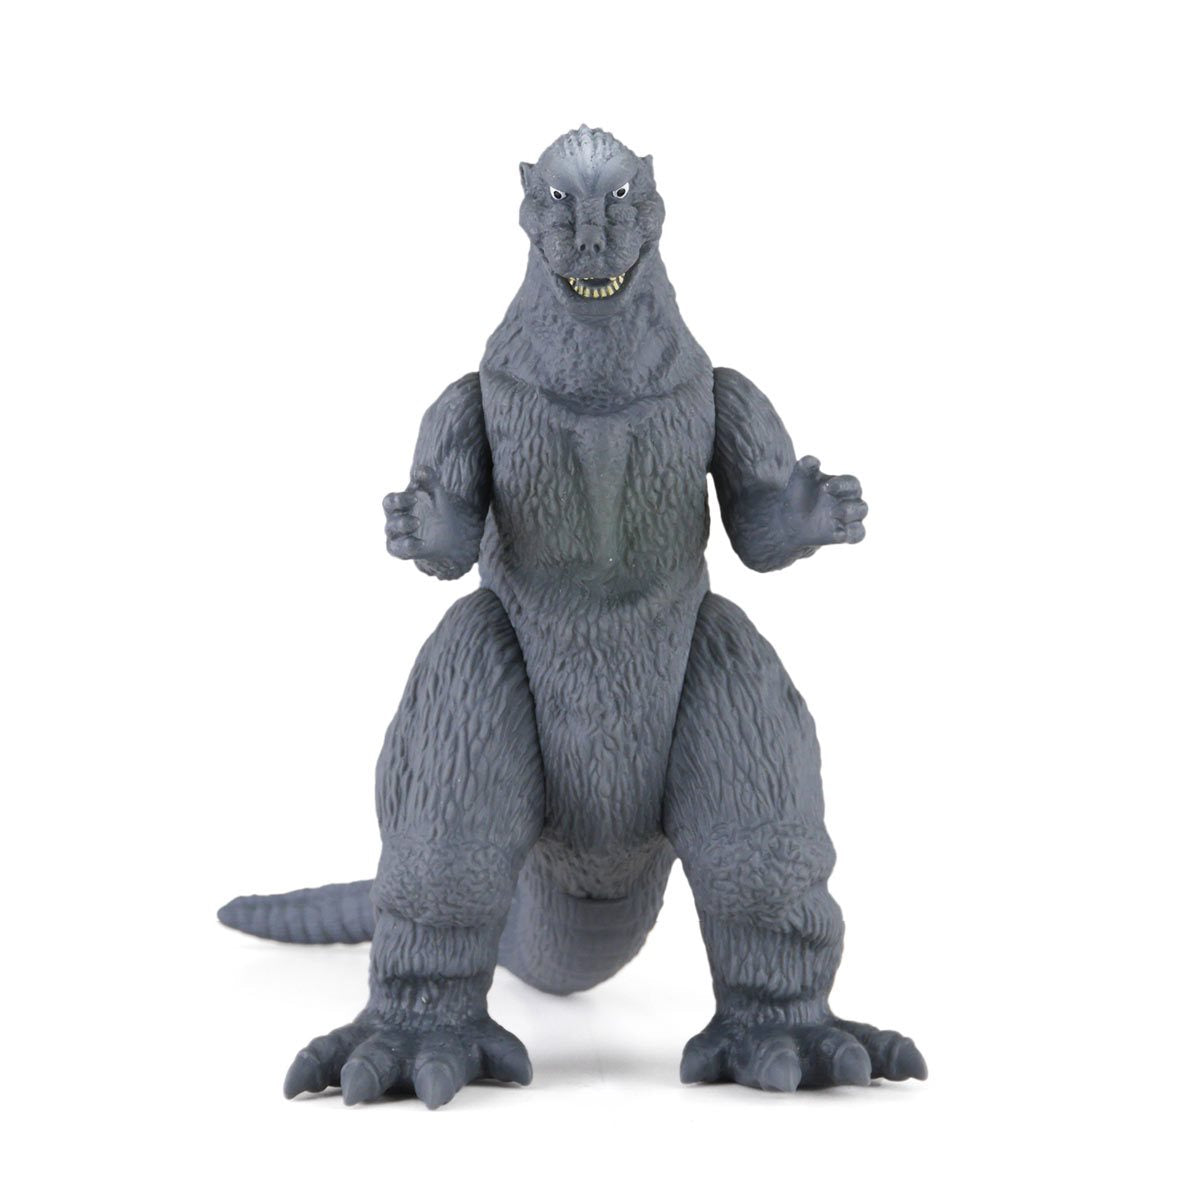 Bandai Movie Monster Series: Godzilla 1954 - Godzilla Figura De Accion